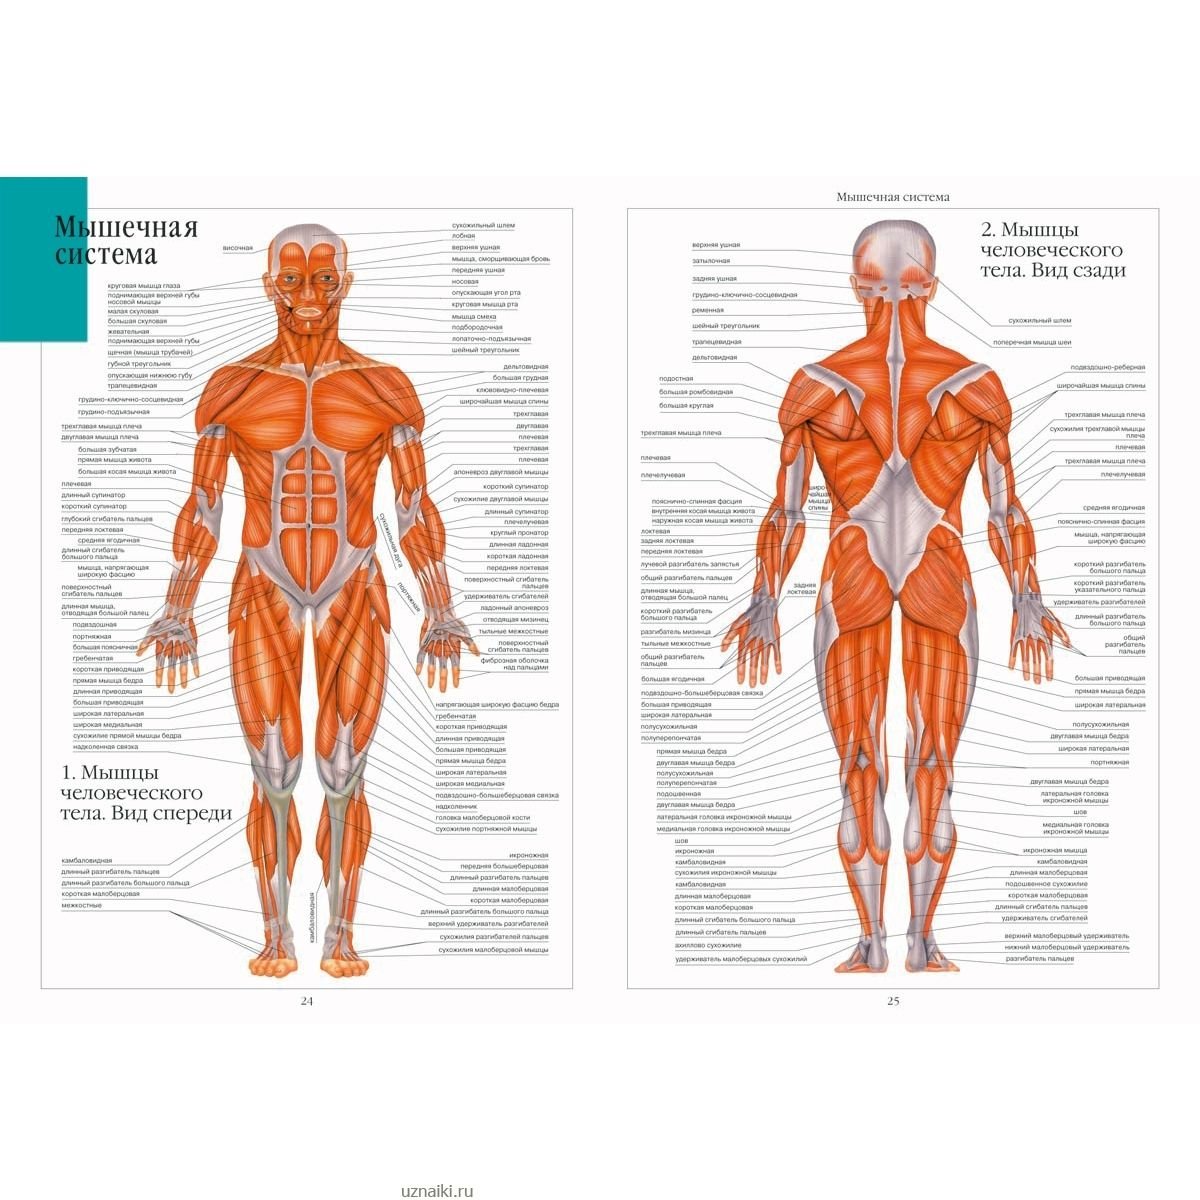 Атлас мышечной системы человека анатомический